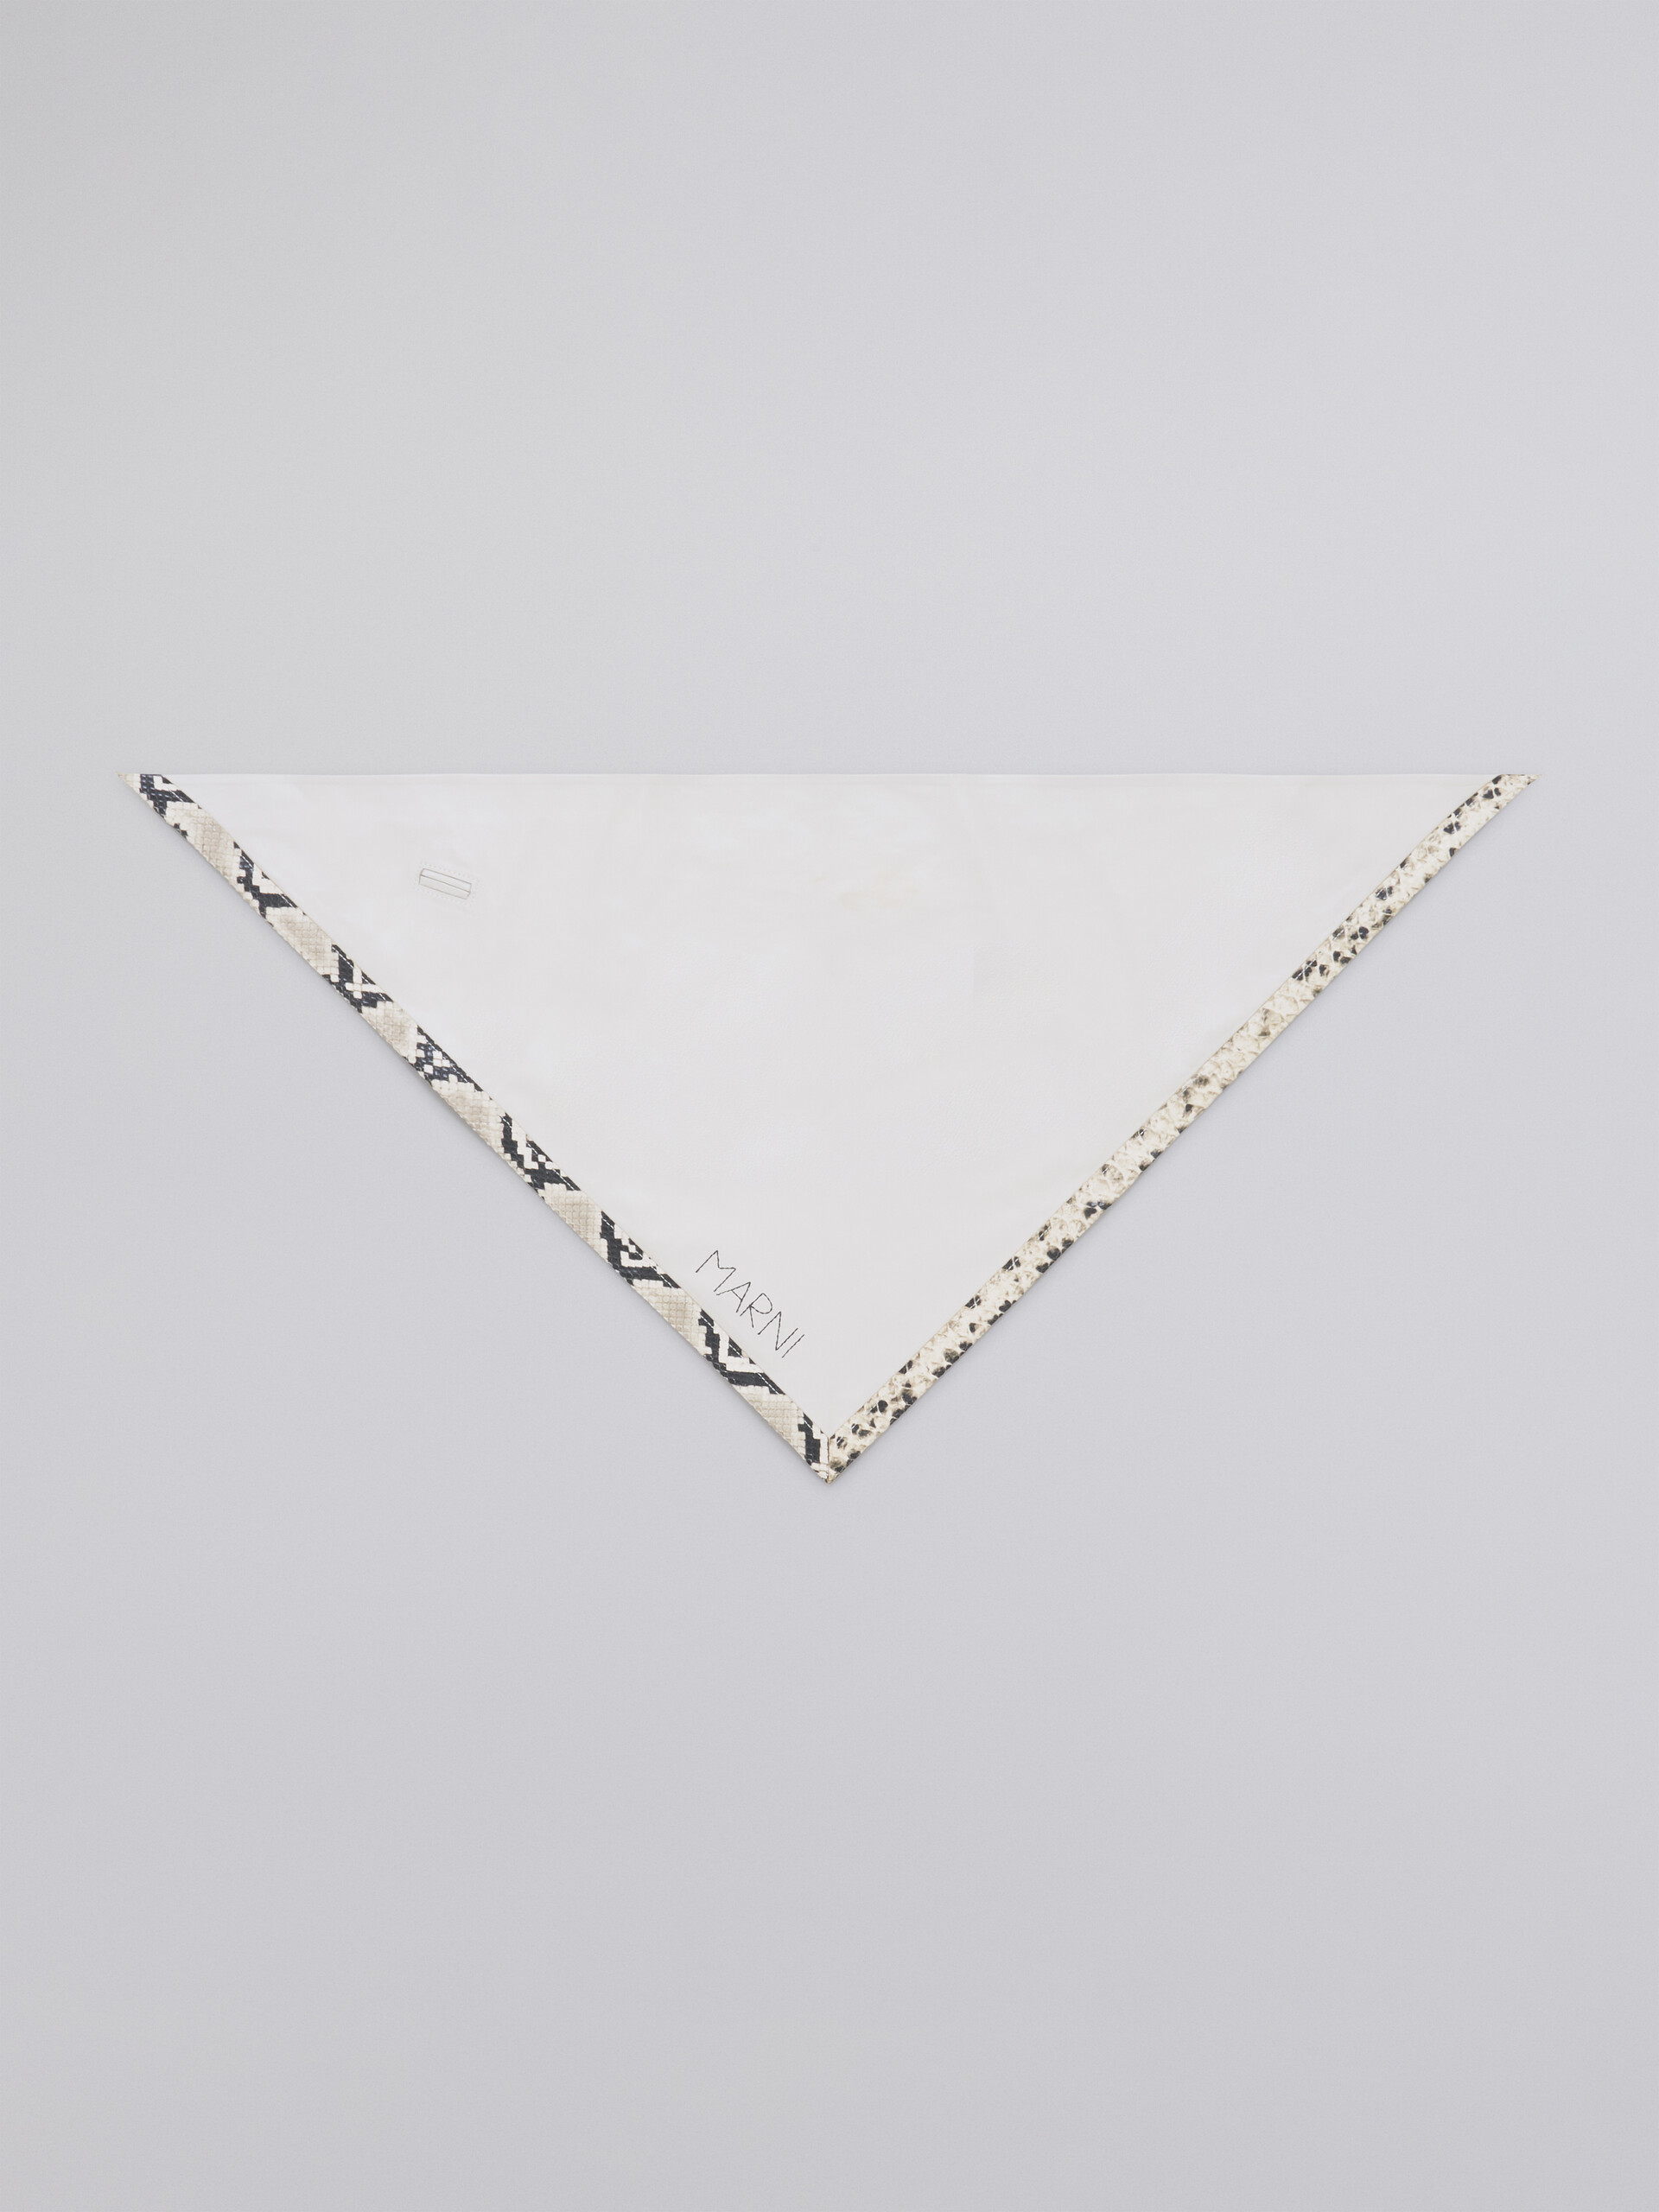 Sciarpa triangolare in nappa bianco con bordo in pitone stampato - Altri accessori - Image 3